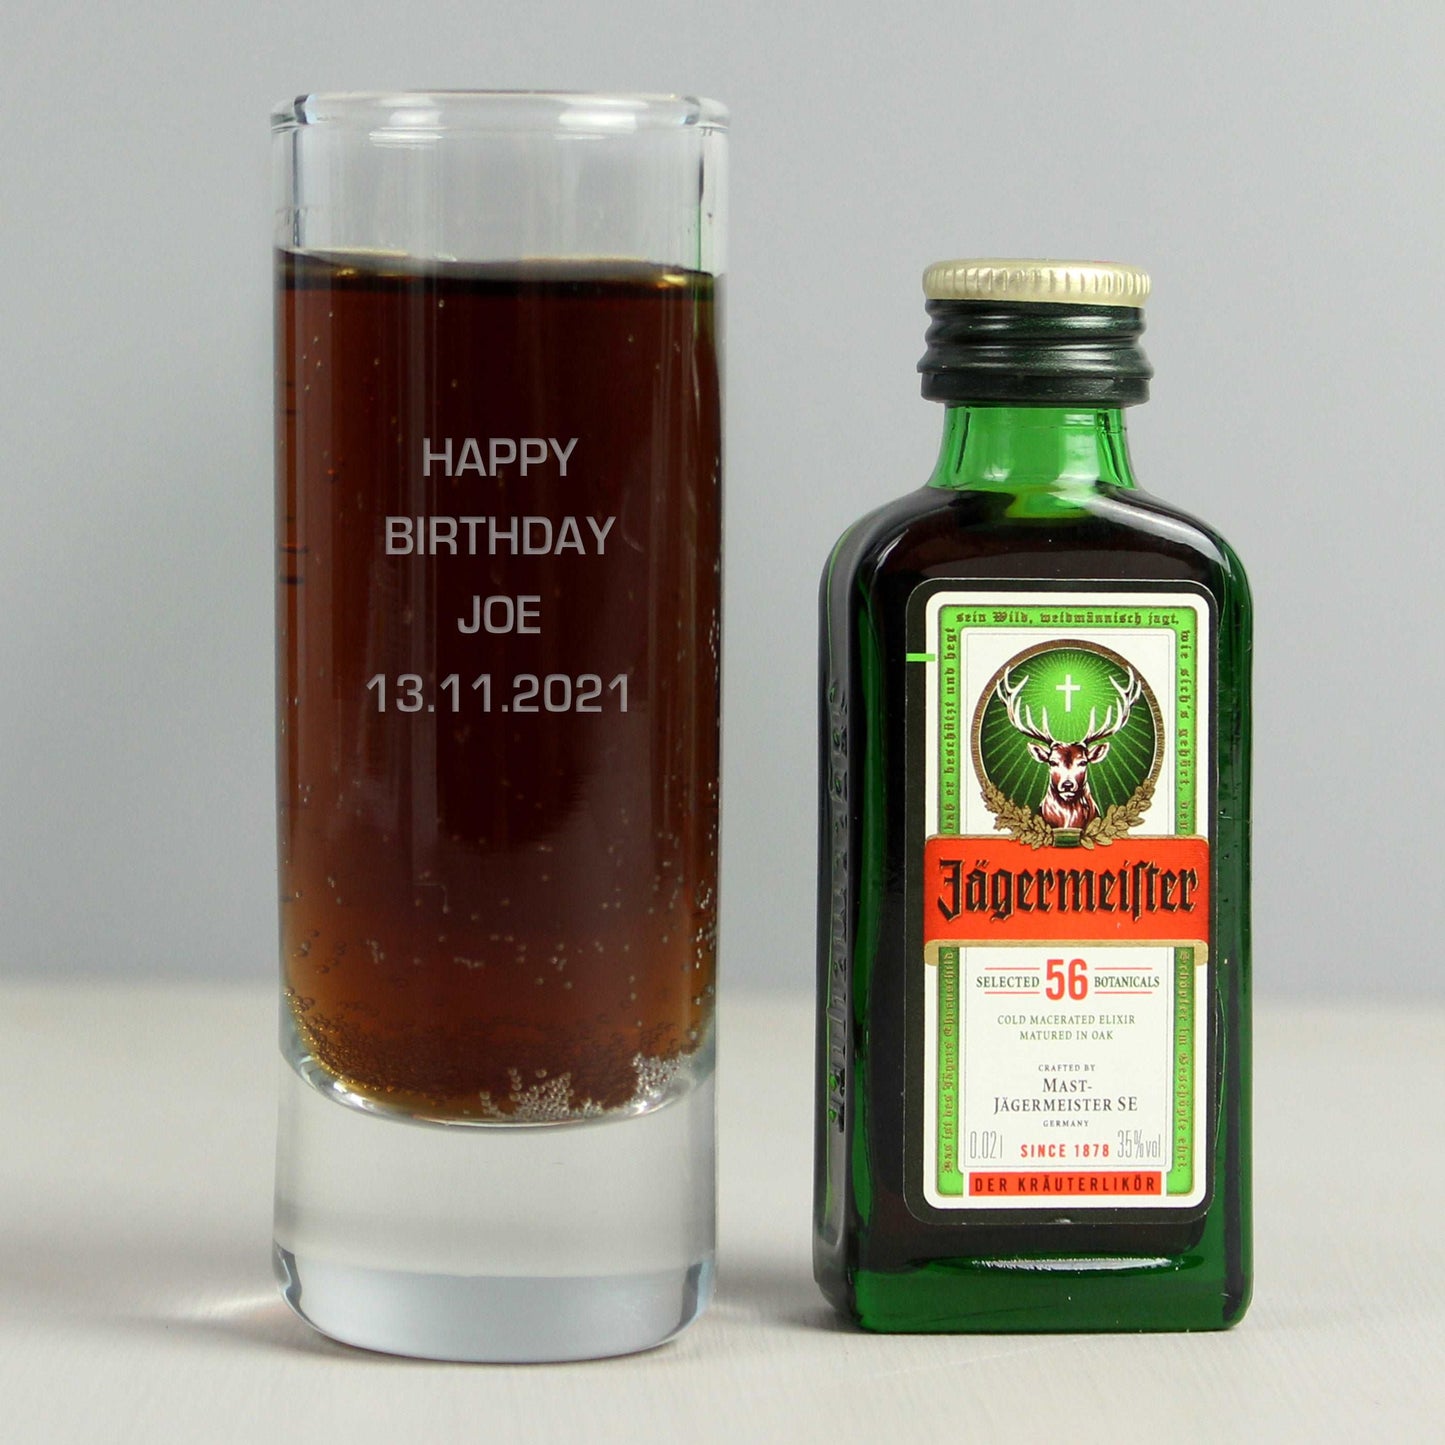 Engraved shot glass and mini bottle of Jägermeister gift set